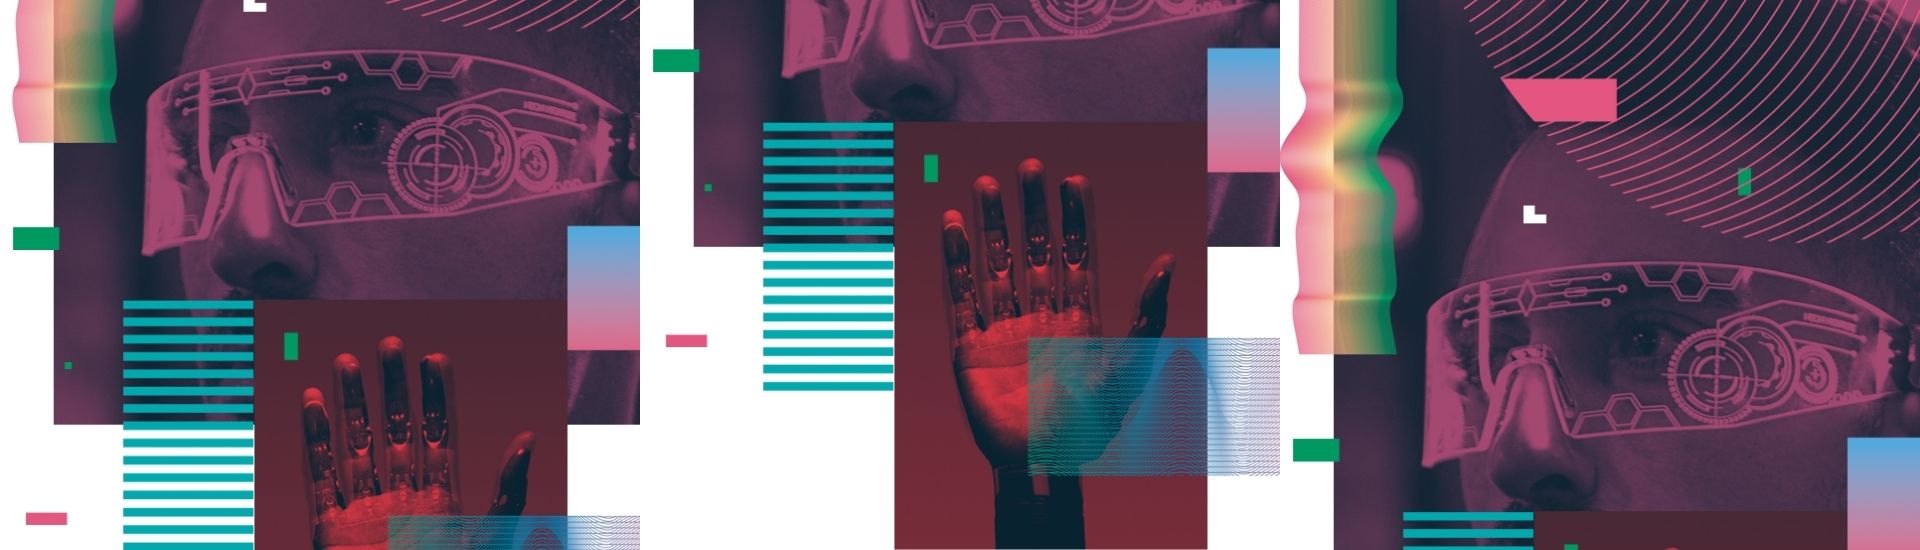 Imagen tipo collage donde se puede ver la mano de un robot, unos lentes inteligentes y piezas tecnológicas. Pieza cortesía de Fundación VTR